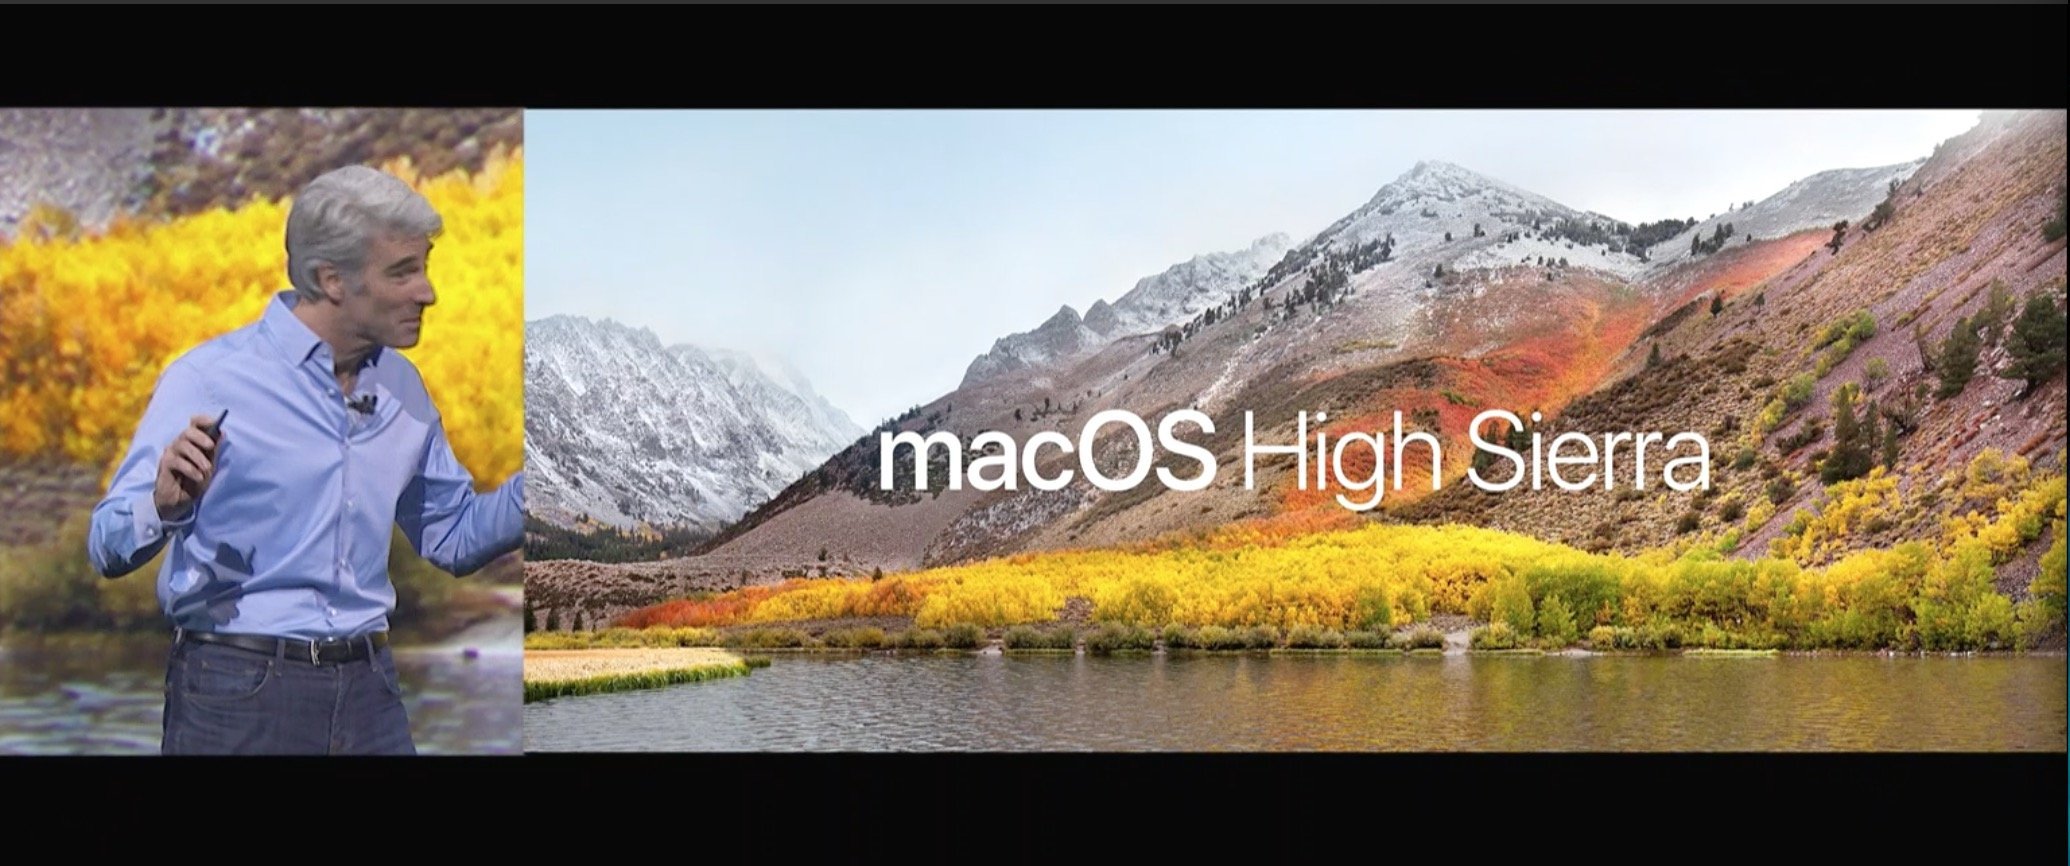 High Sierra: das kann das neue macOS High Sierra 10.13 mit Metal 2 und VR 1